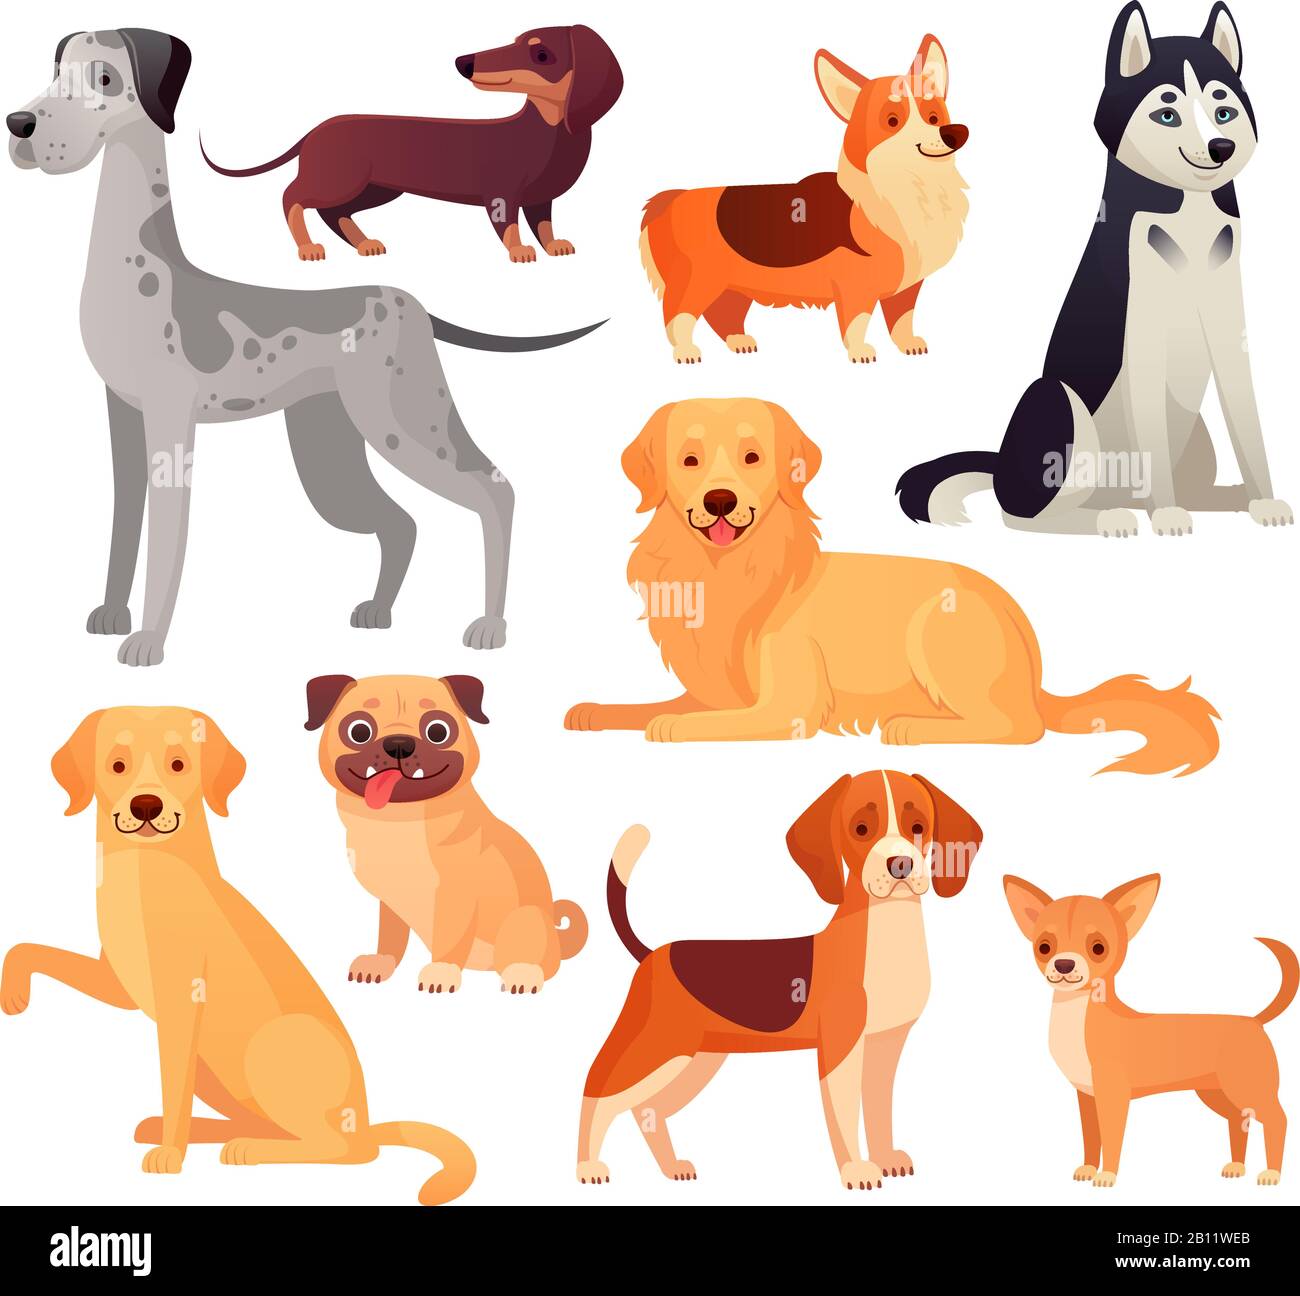 Hunde Haustiere Charakter. Labrador Hund, Golden Retriever und Husky. Cartoon-Vektor-isoliertes Illustrationssatz Stock Vektor